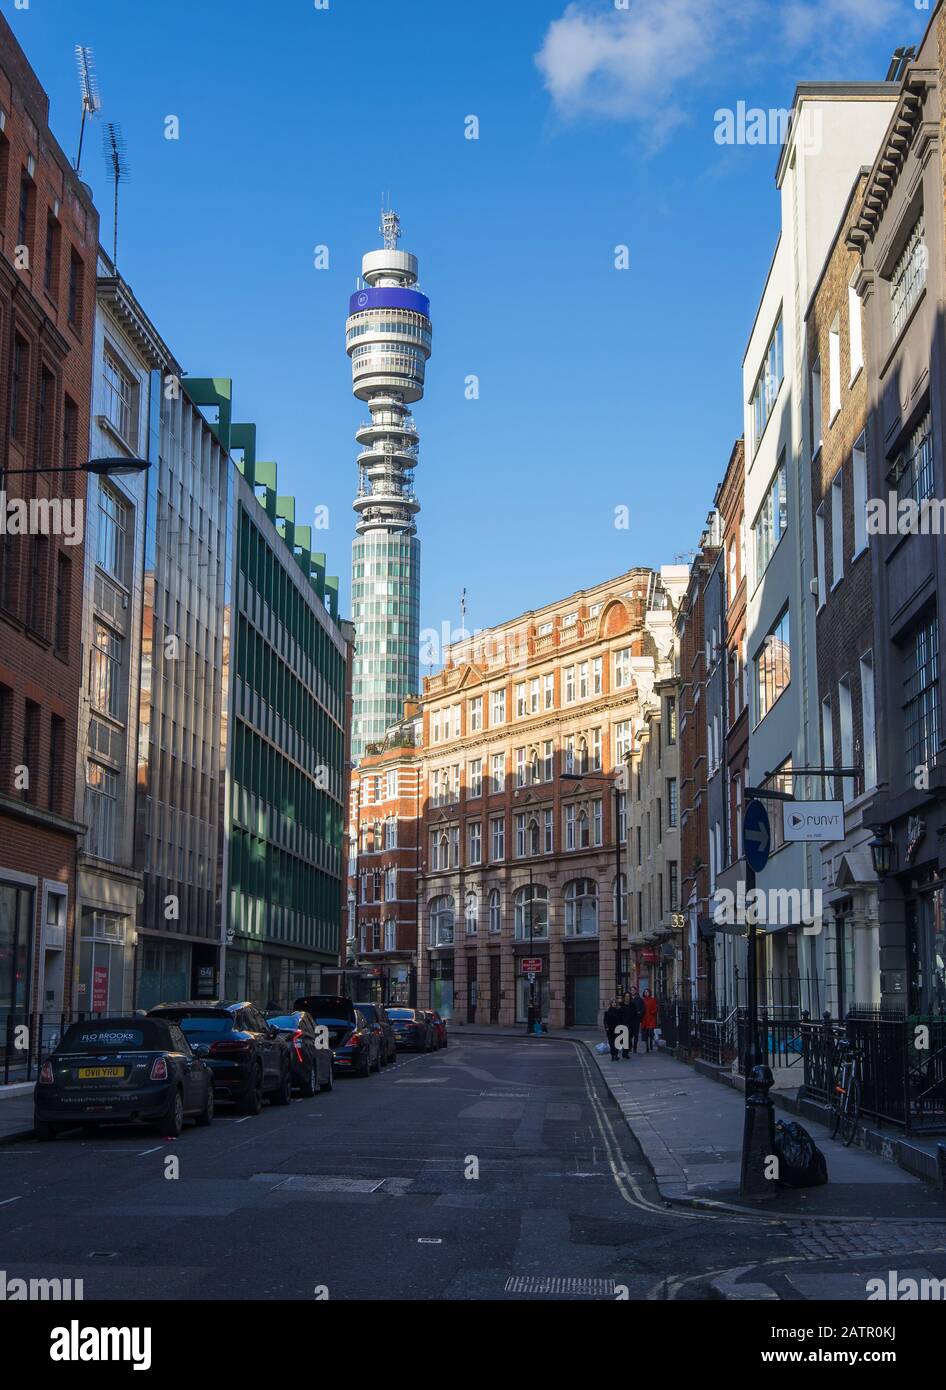 La tour BT, anciennement la tour de poste, vue depuis les rues environnantes. Londres Banque D'Images